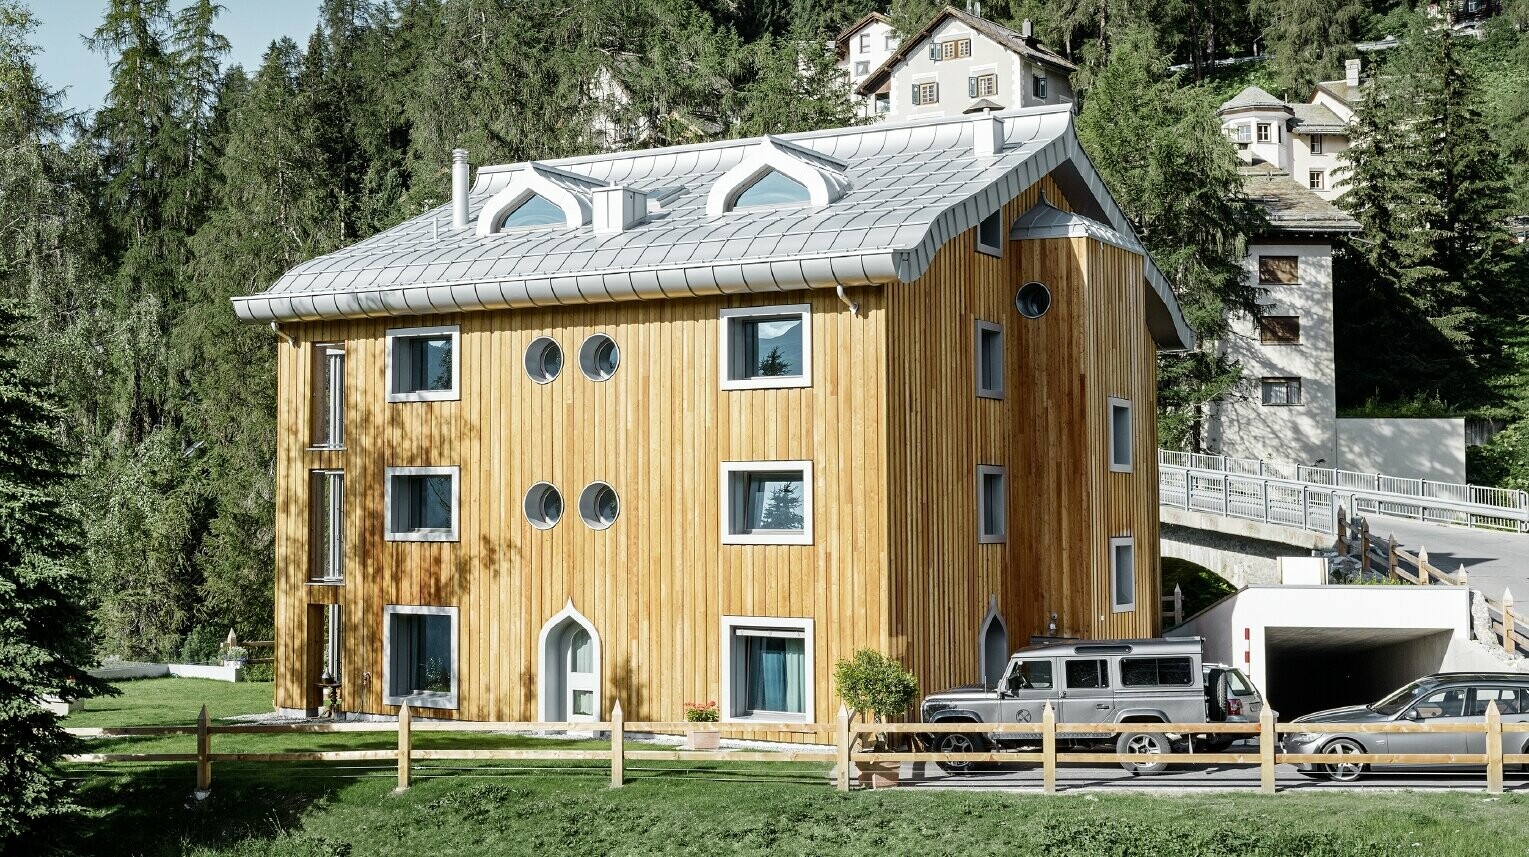 Bostadsbyggnad i St. Moritz med träfasad och aluminiumtak med svängda takskenor i silvermetallic